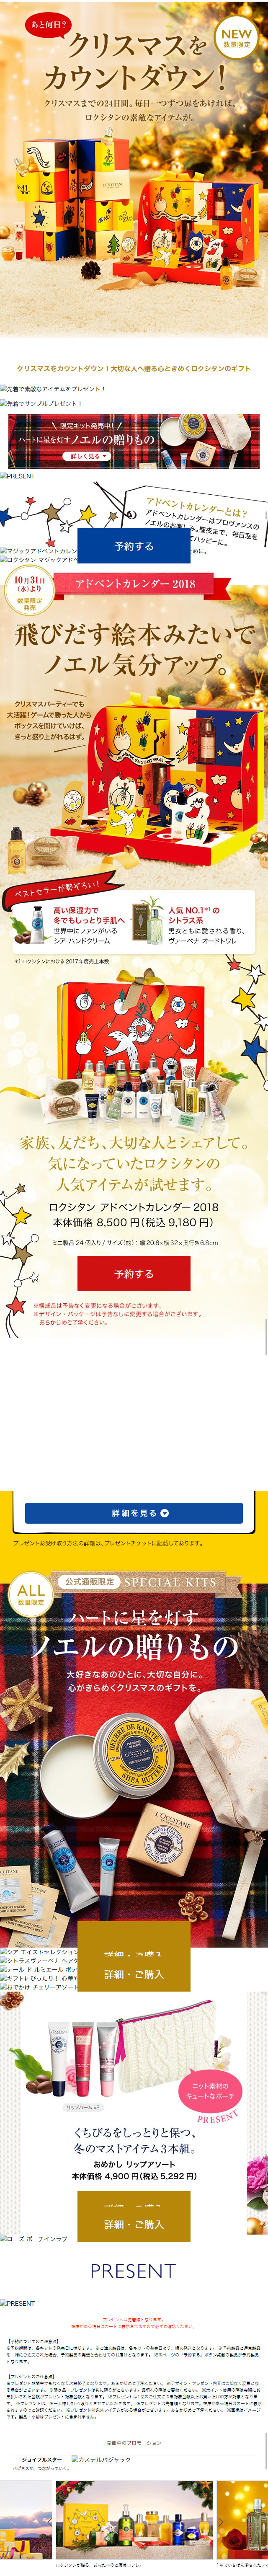 クリスマスギフト・プレゼント特集_sp_1